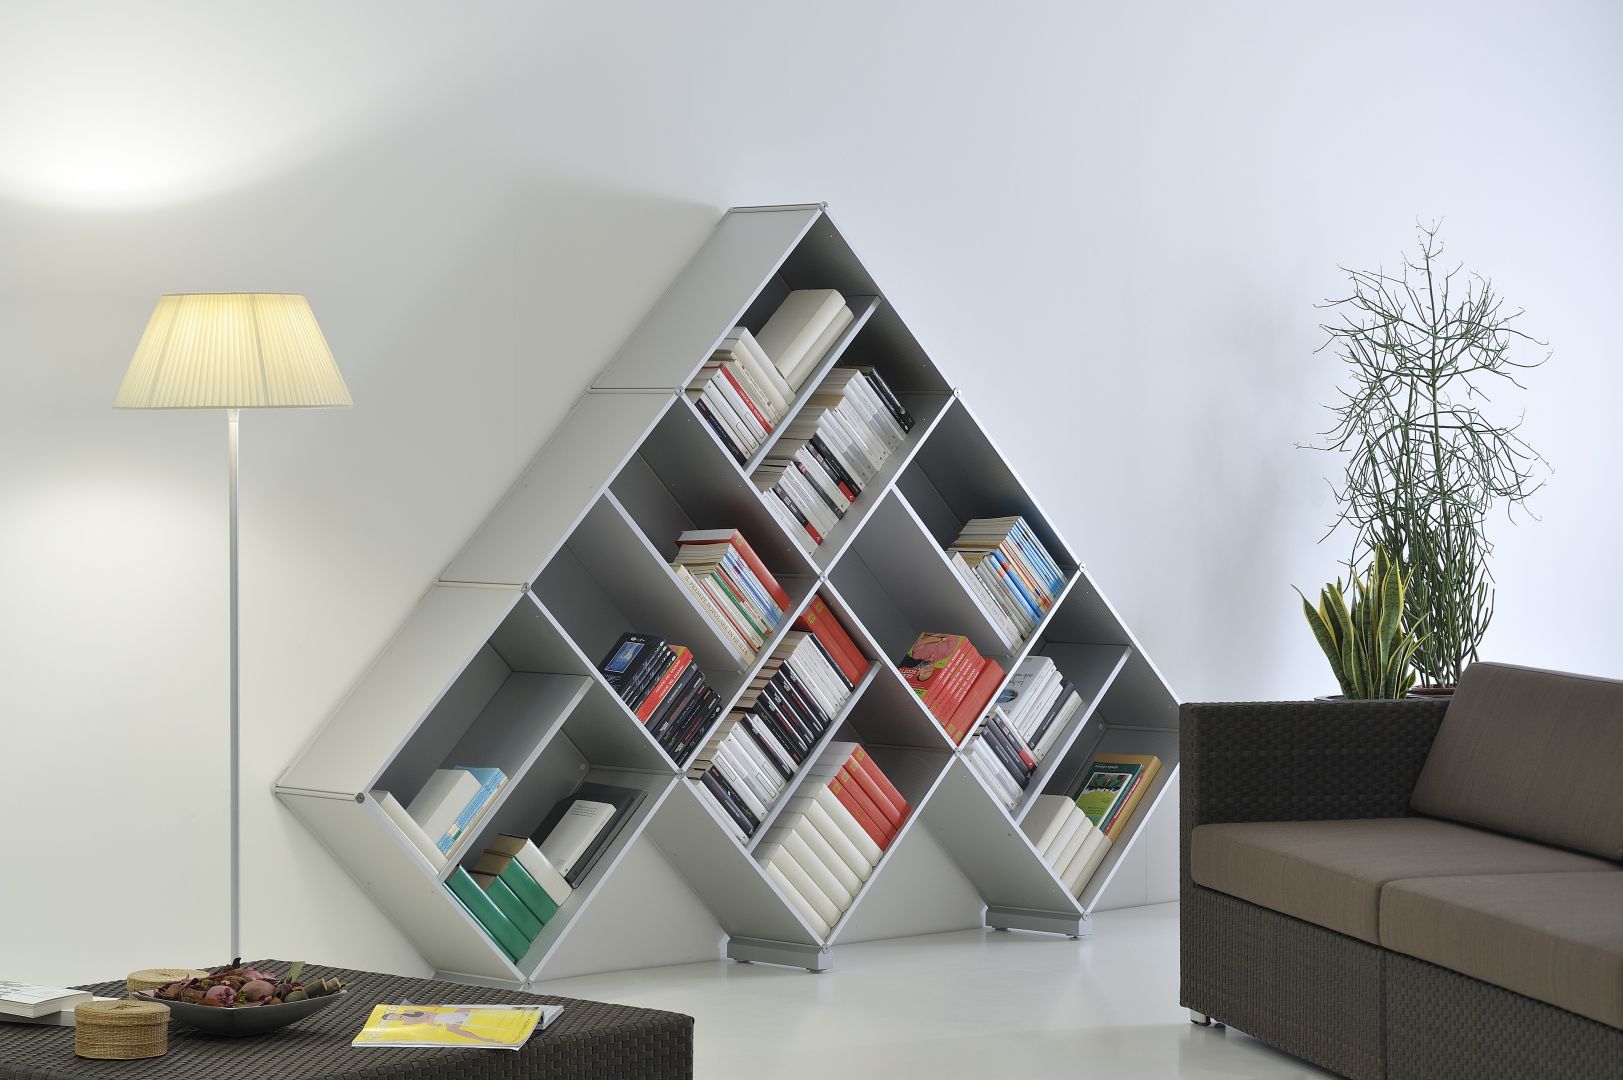 Półki w kształcie piramidy to prawdziwa ozdoba salonu. Książki są przechowywanie w ciekawy sposób. Fot. Piarotto